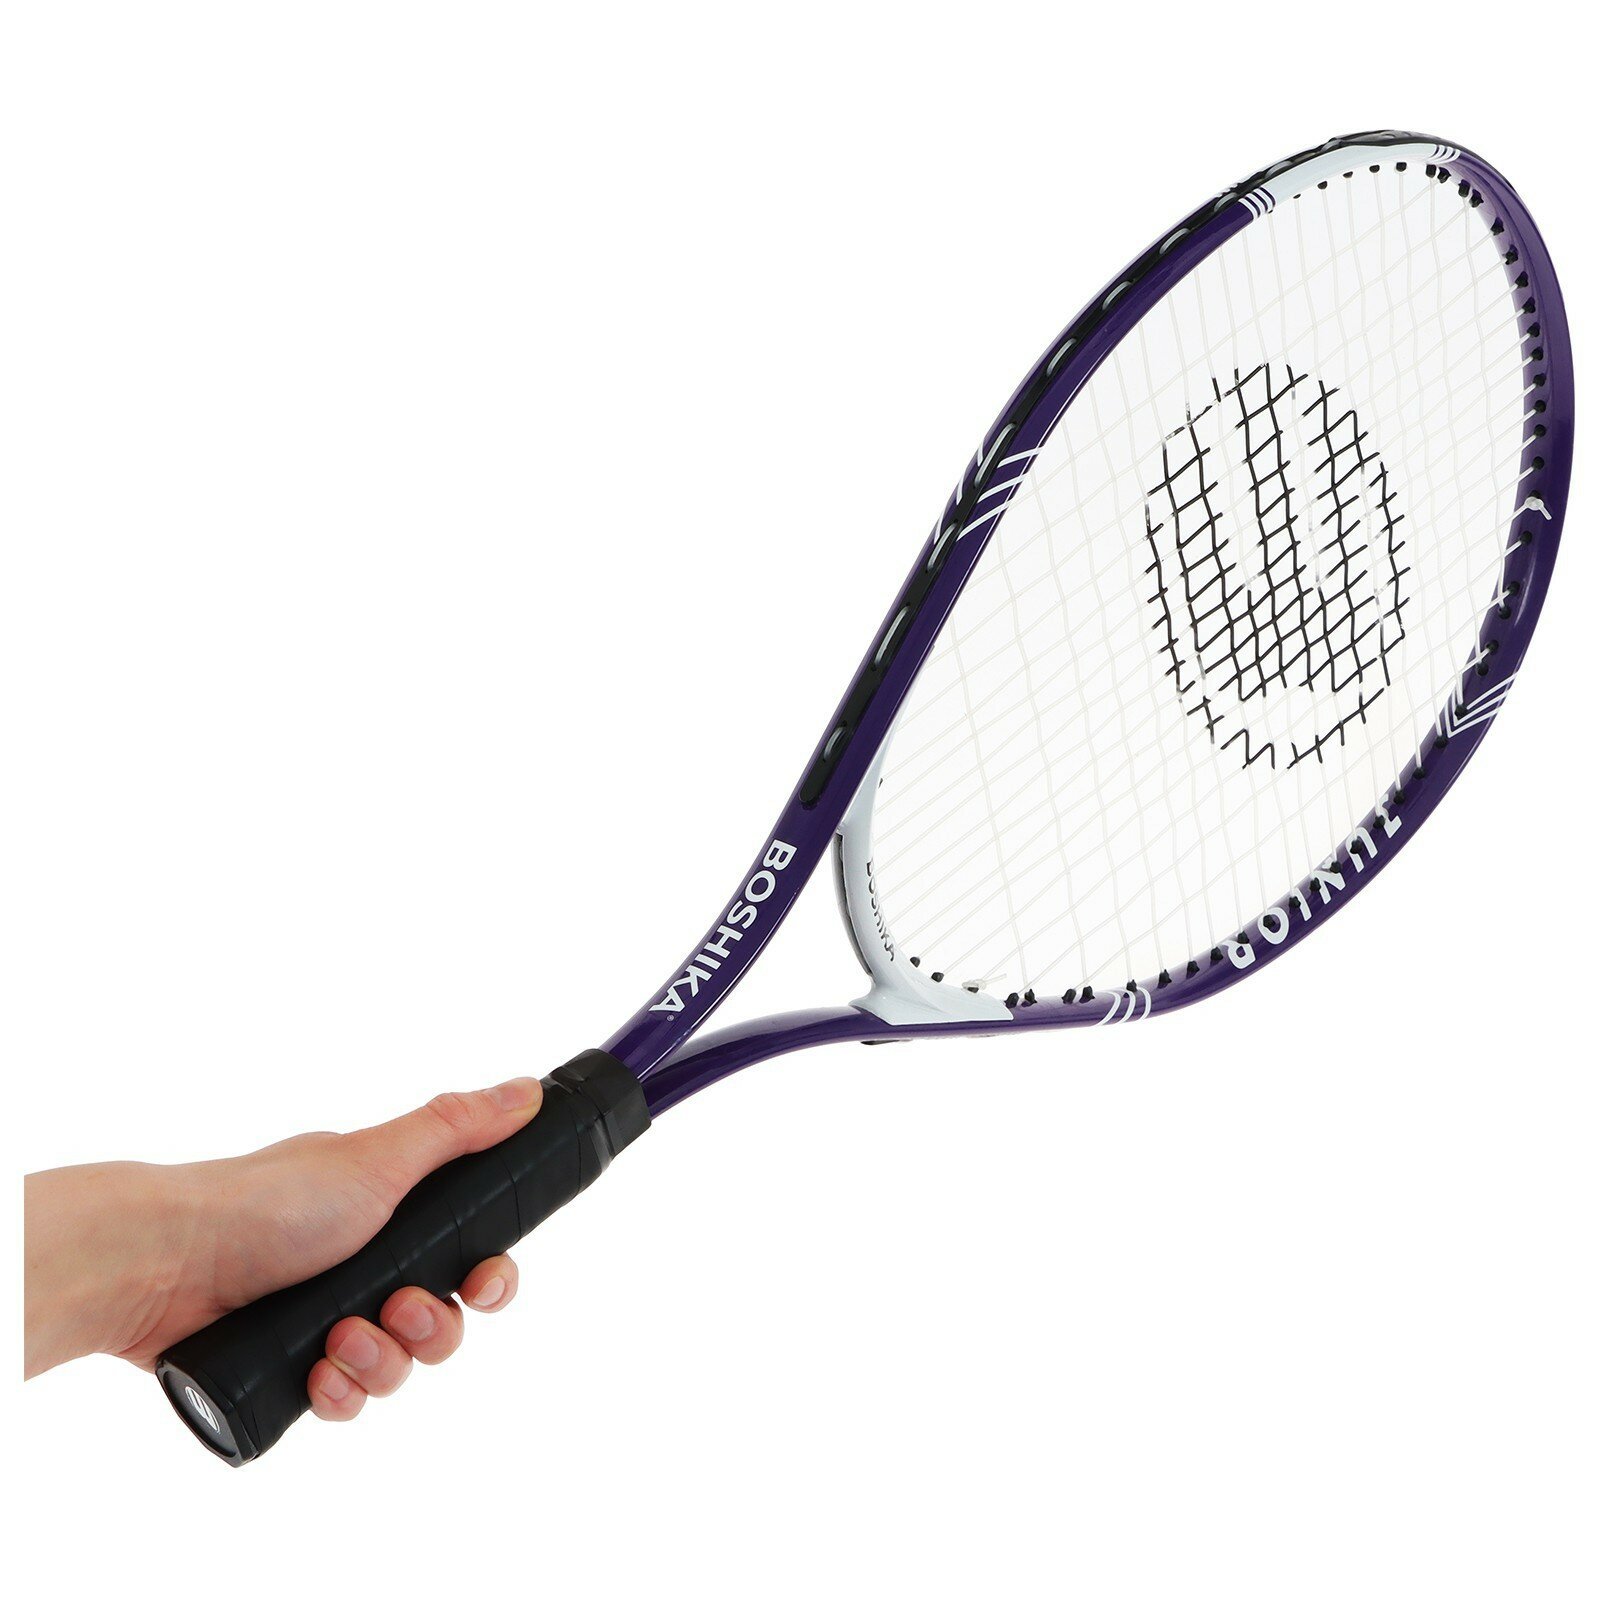 Ракетка для большого тенниса детская JUNIOR, алюминий, 23, цвет фиолетовый